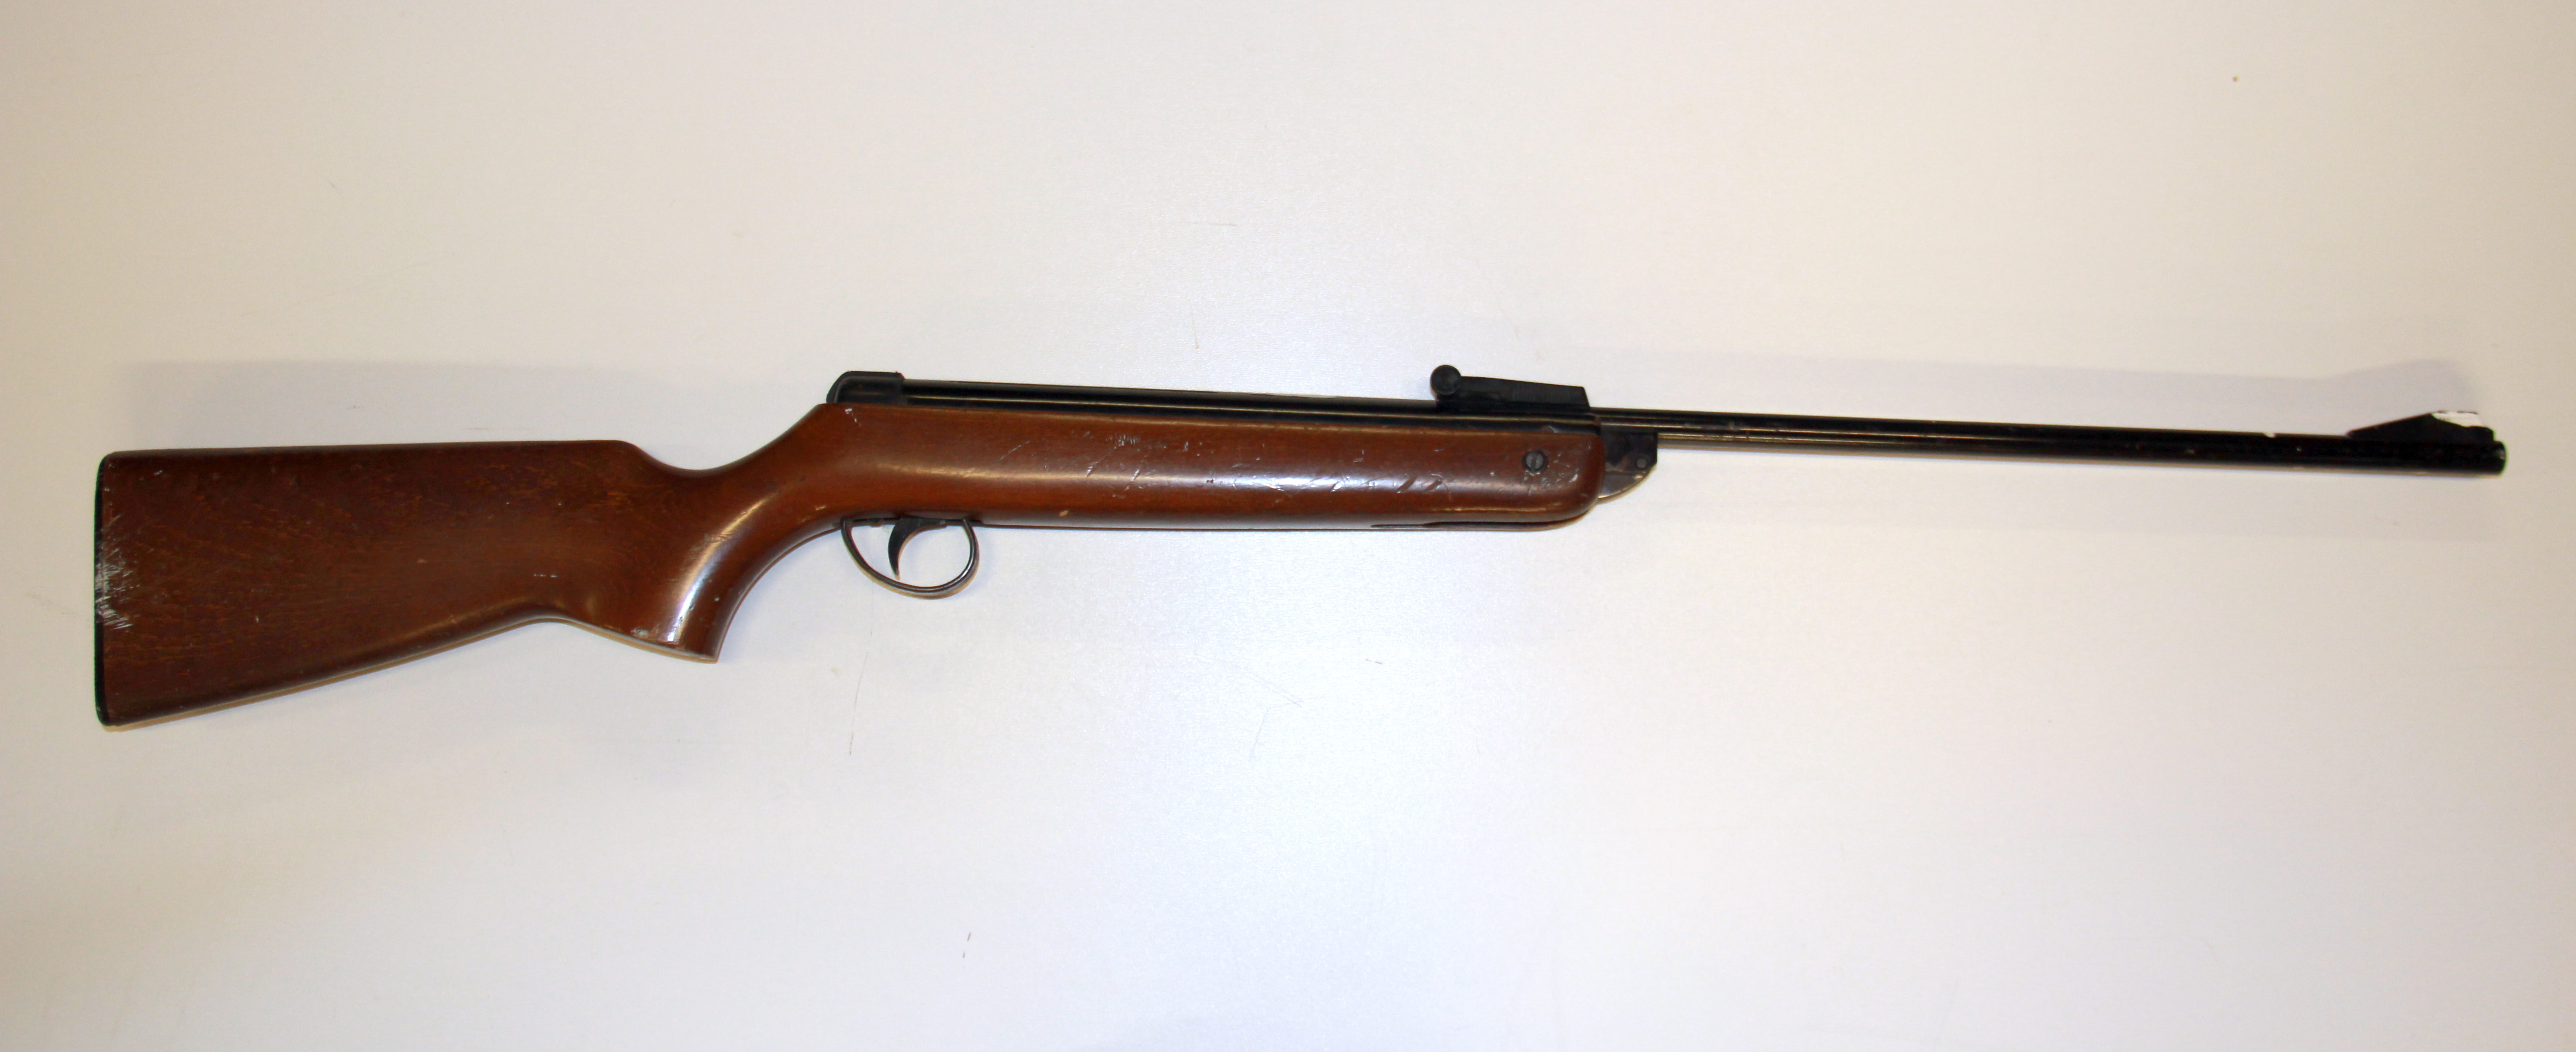 A BSA meteor air rifle.